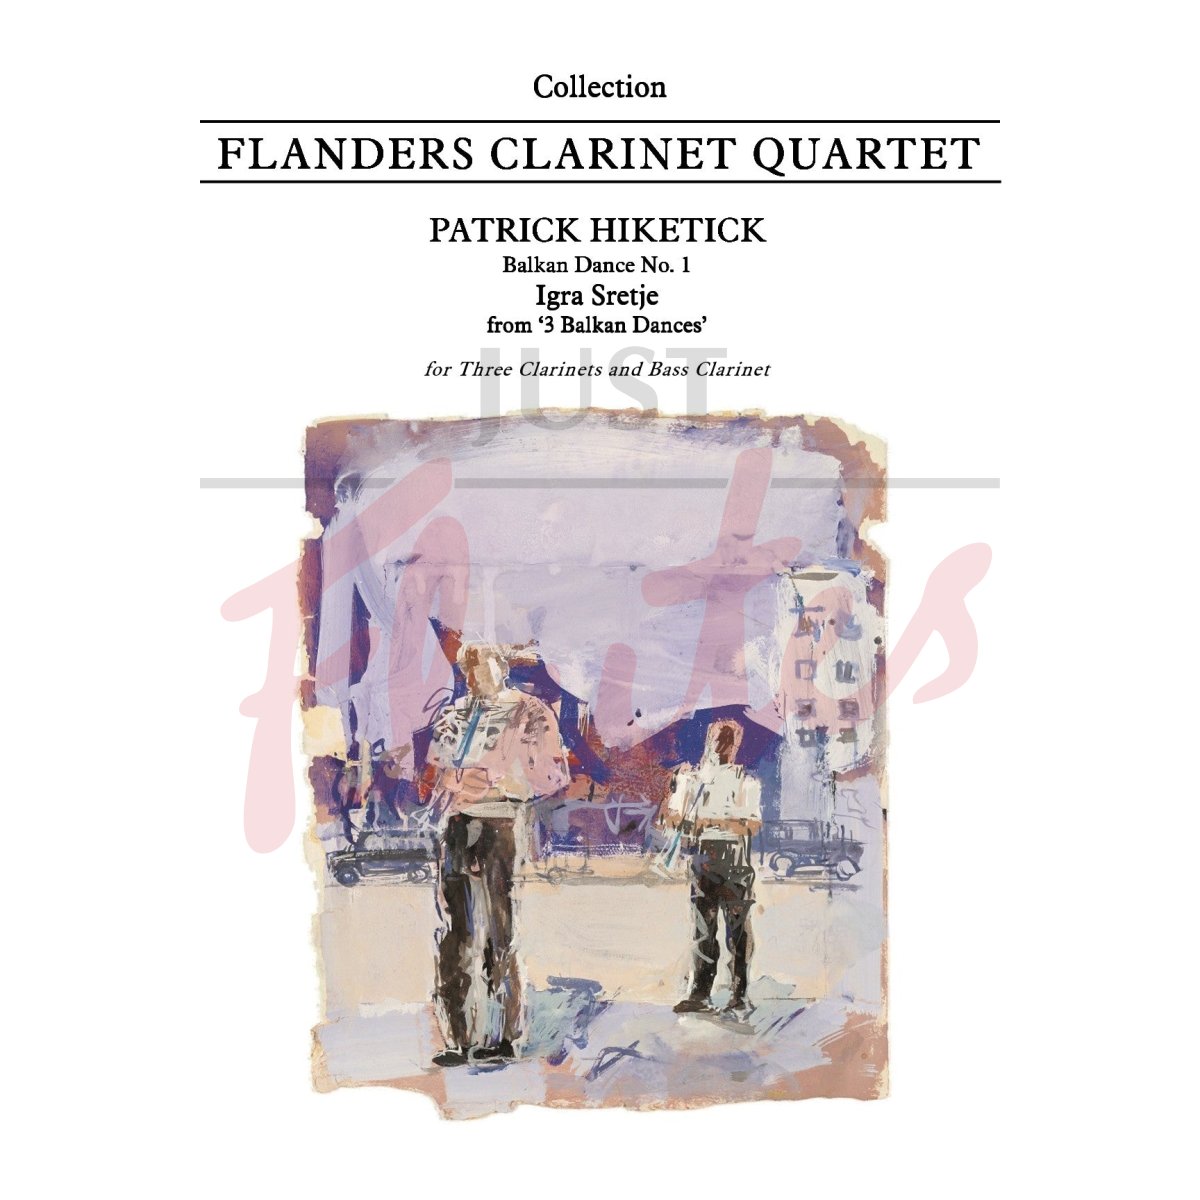 Balkan Dances no.1 (Igra Sretje) for Clarinet Quartet